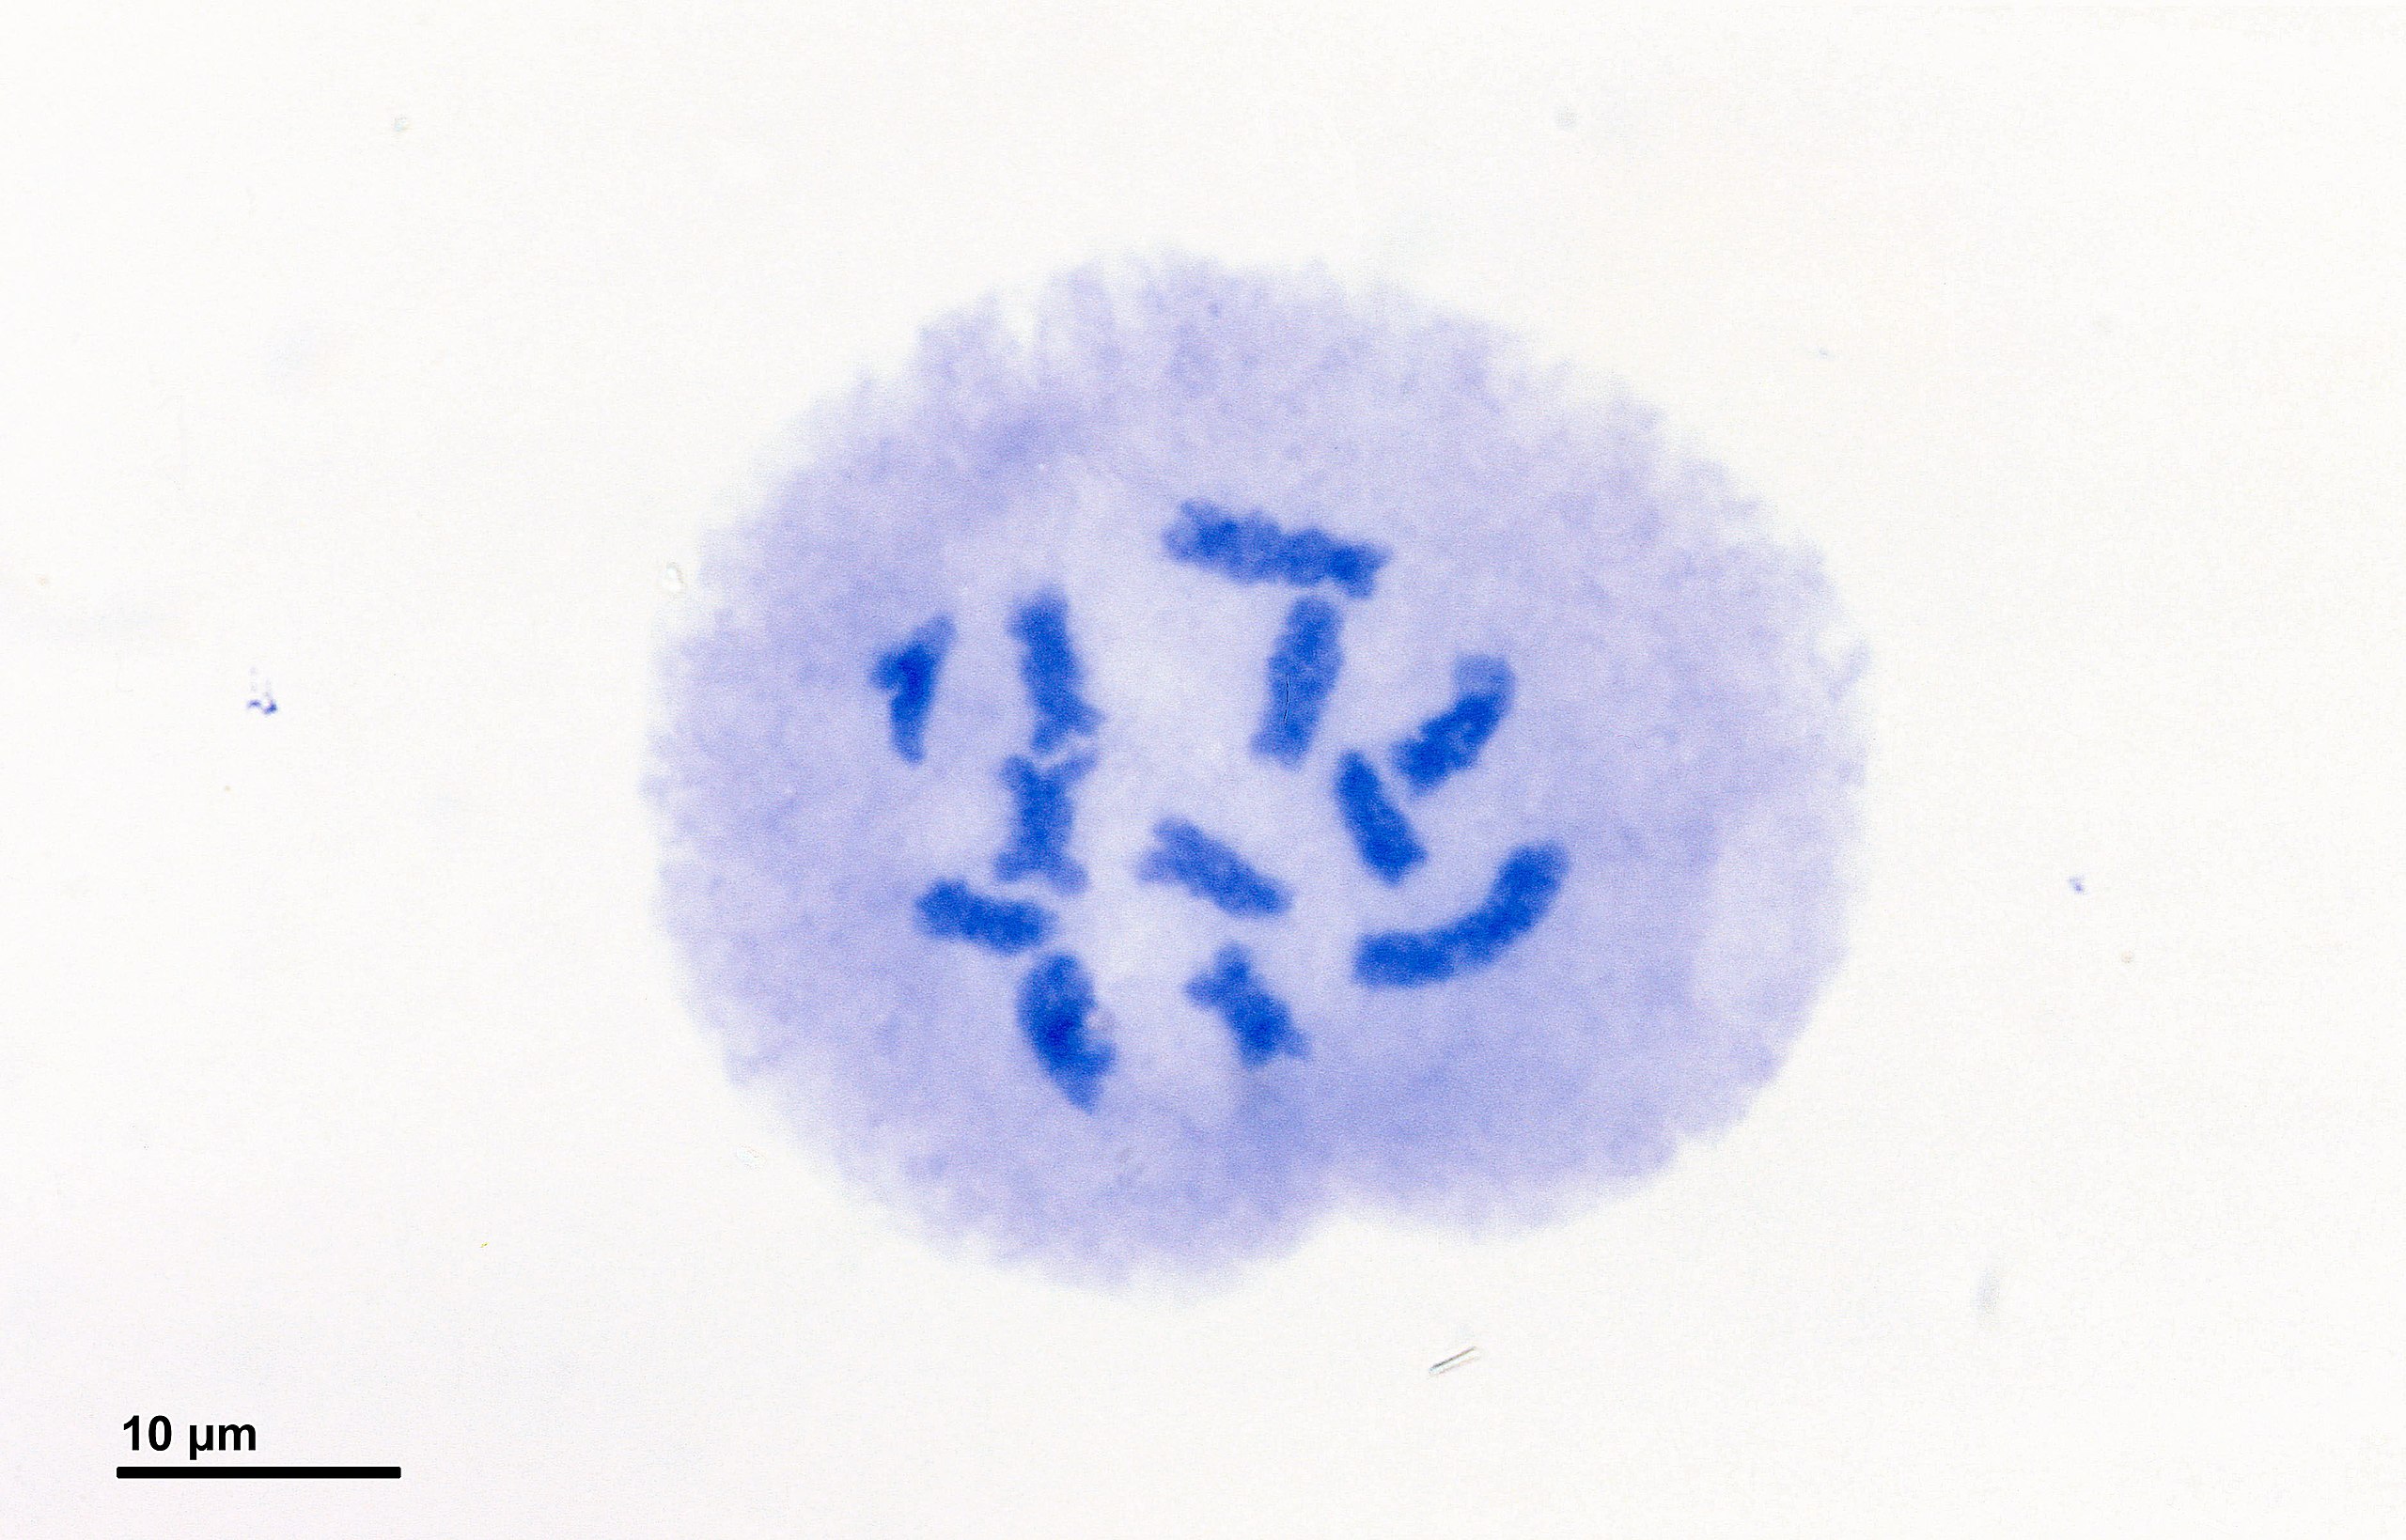 Una sola célula madre de polen con cromosomas condensados visibles, sin envoltura nuclear ni nucleolo.